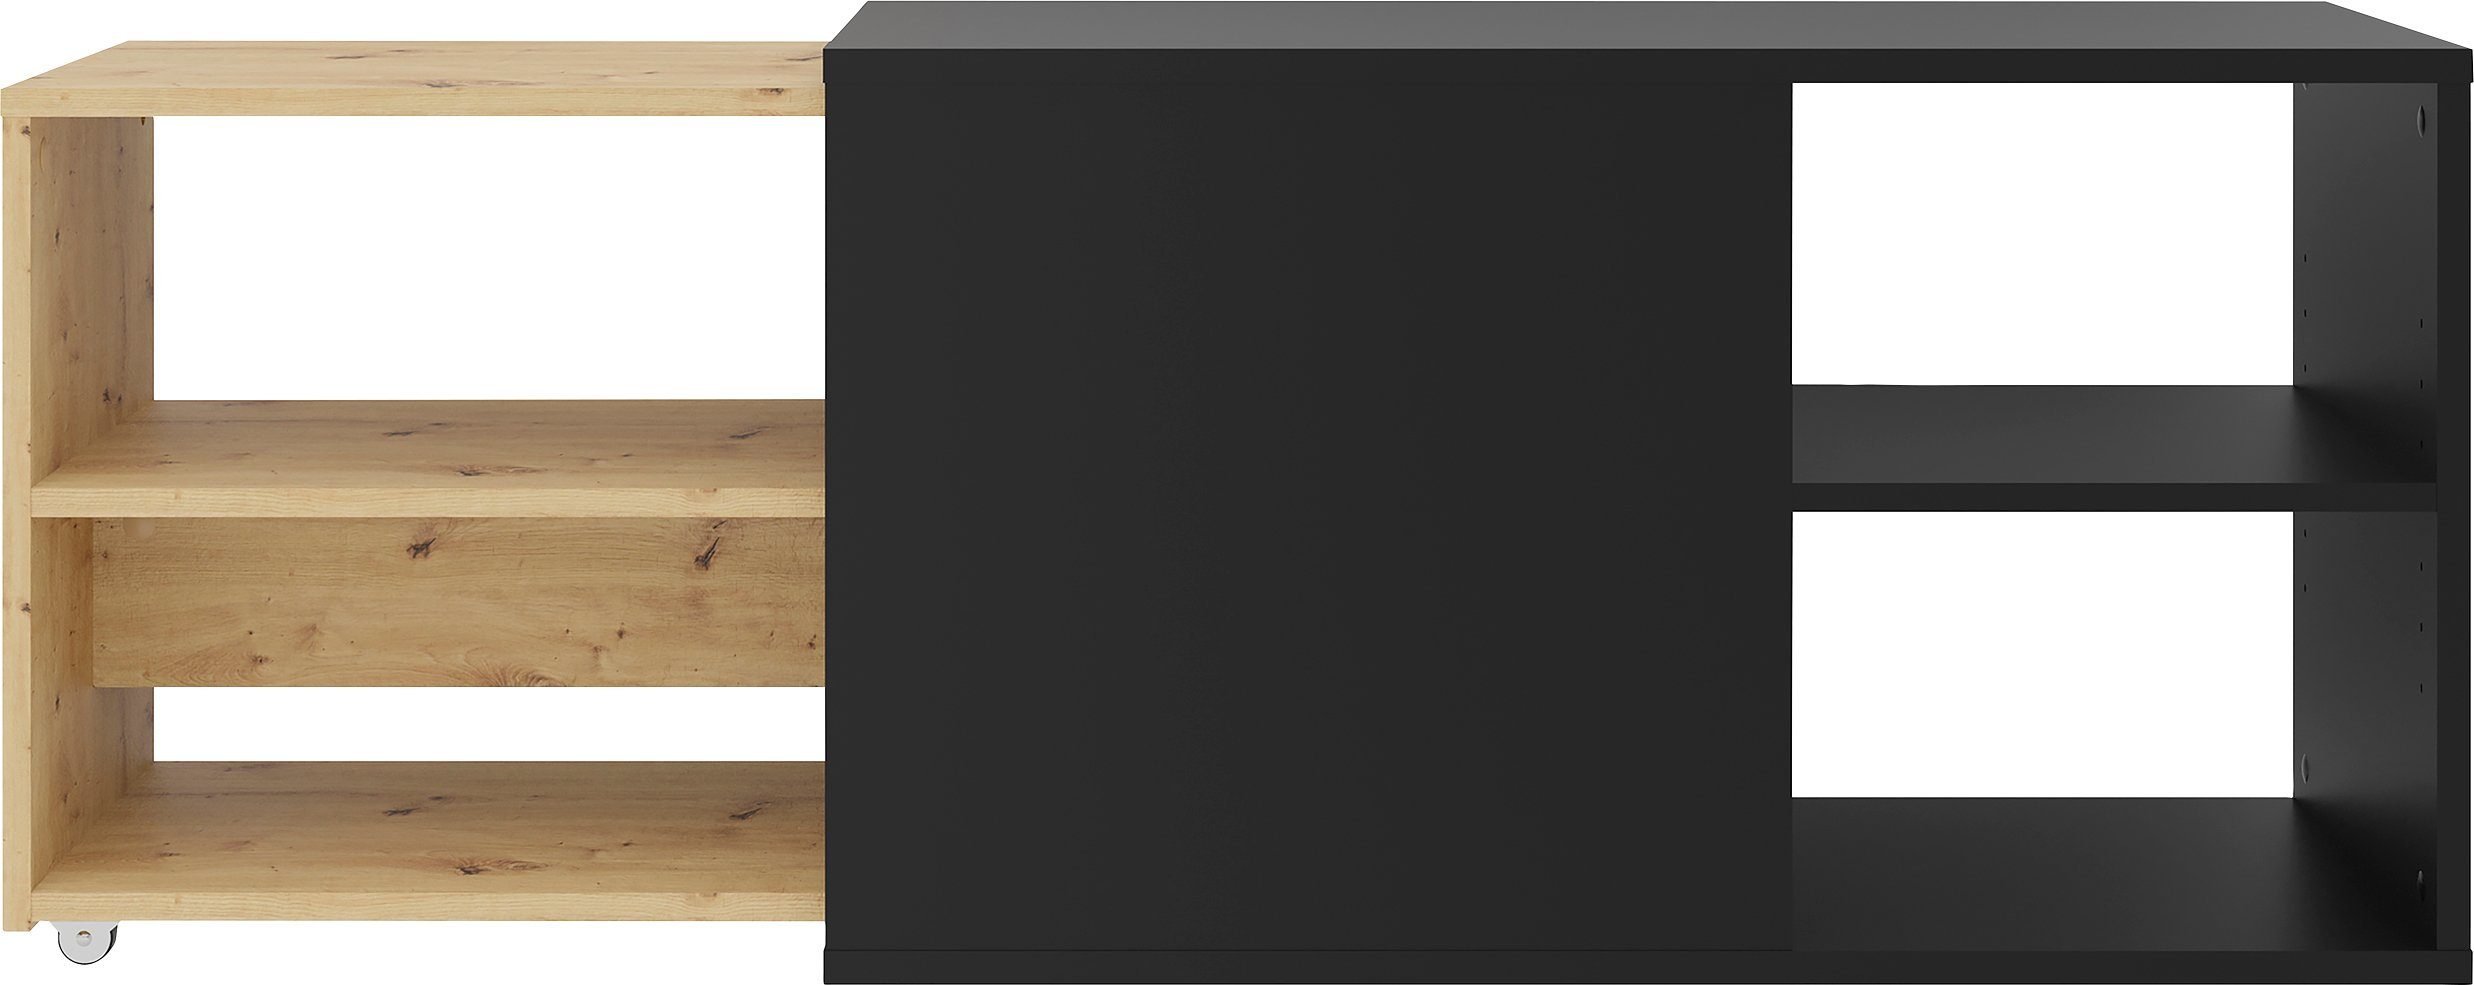 FMD TV-Board Slide, ausziehbar auf 129 cm